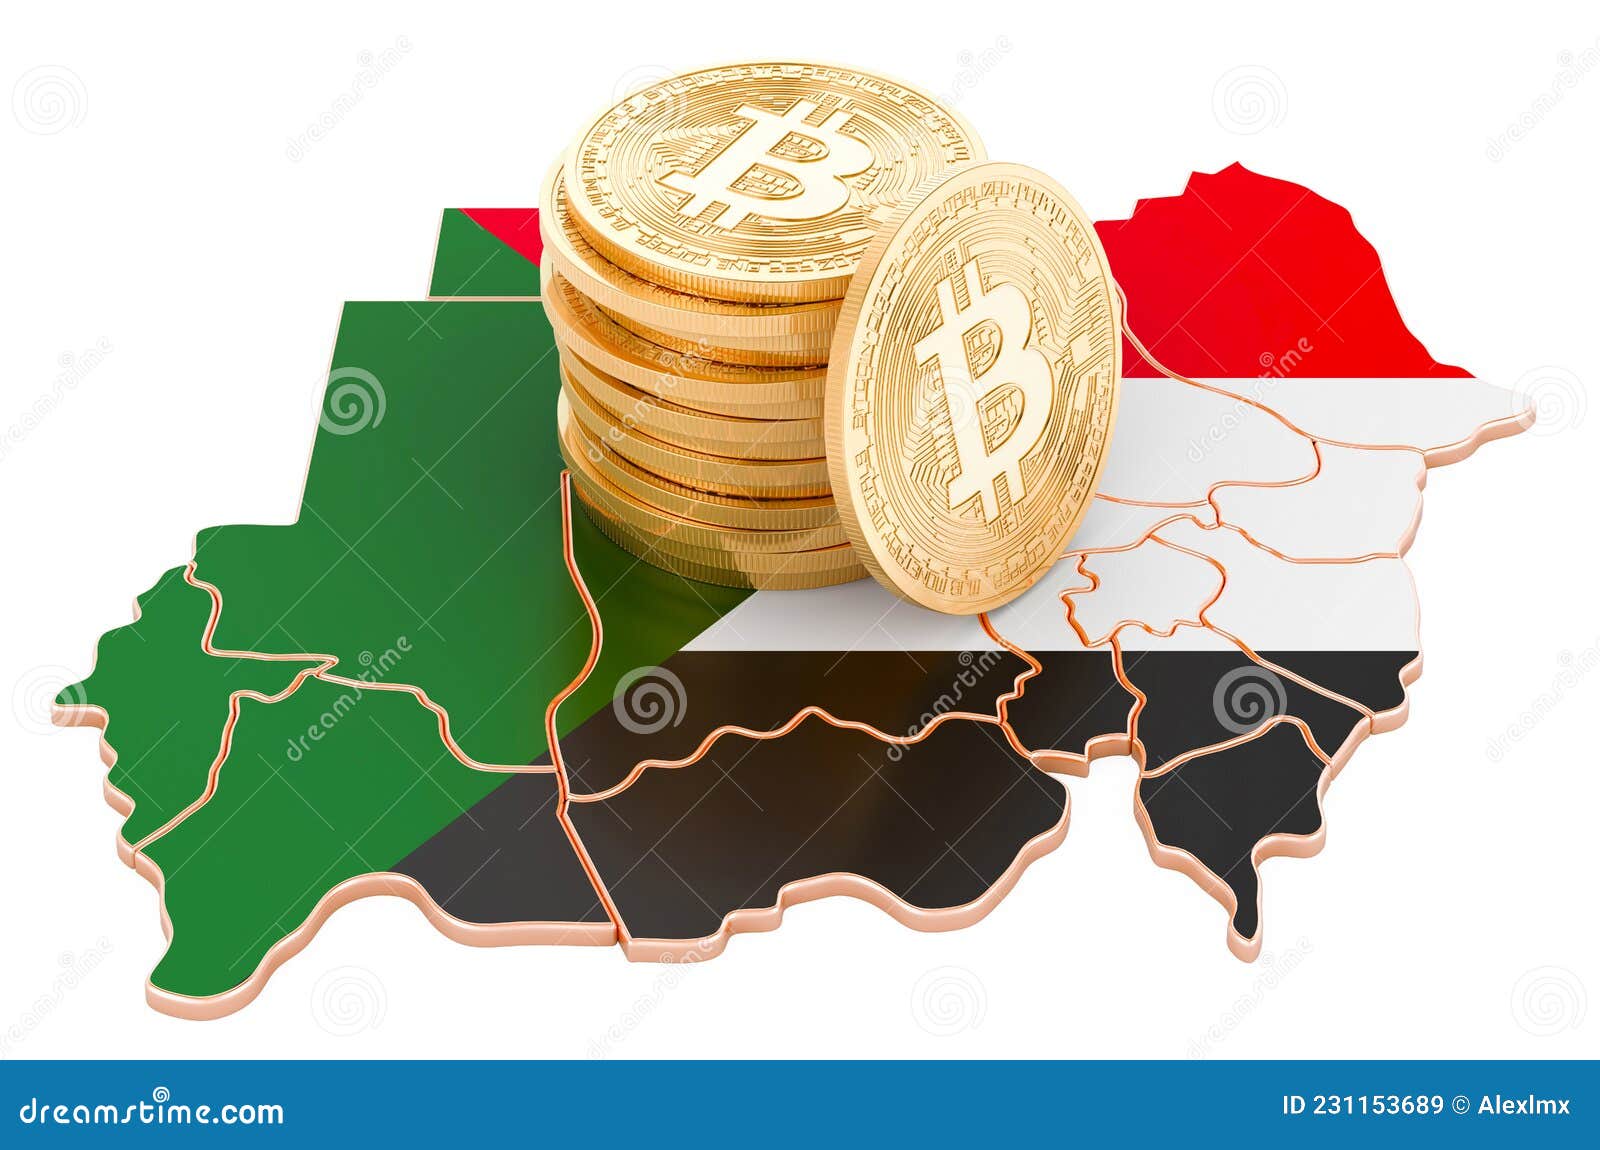 buy bitcoin in sudan